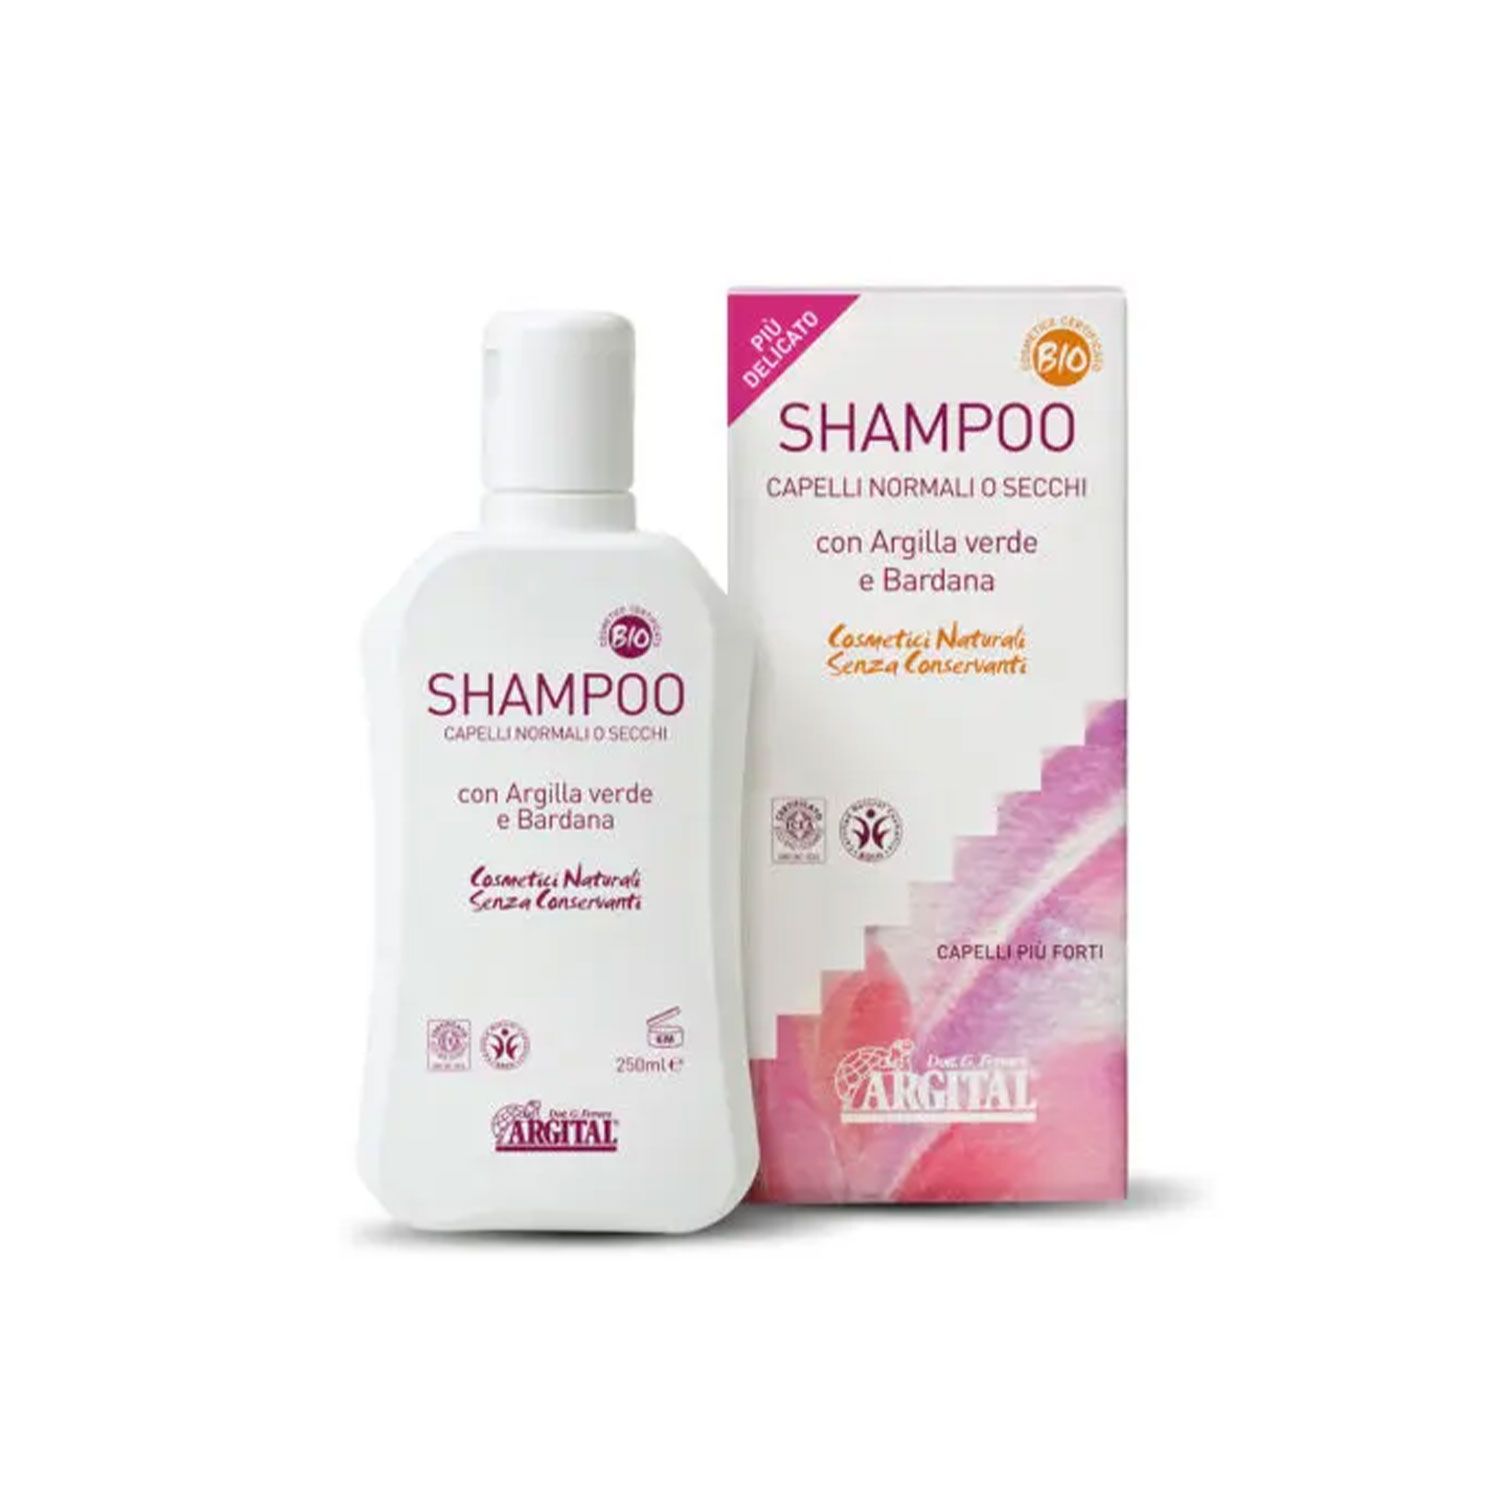 Argital Shampoo Capelli Normali O Secchi 500ml